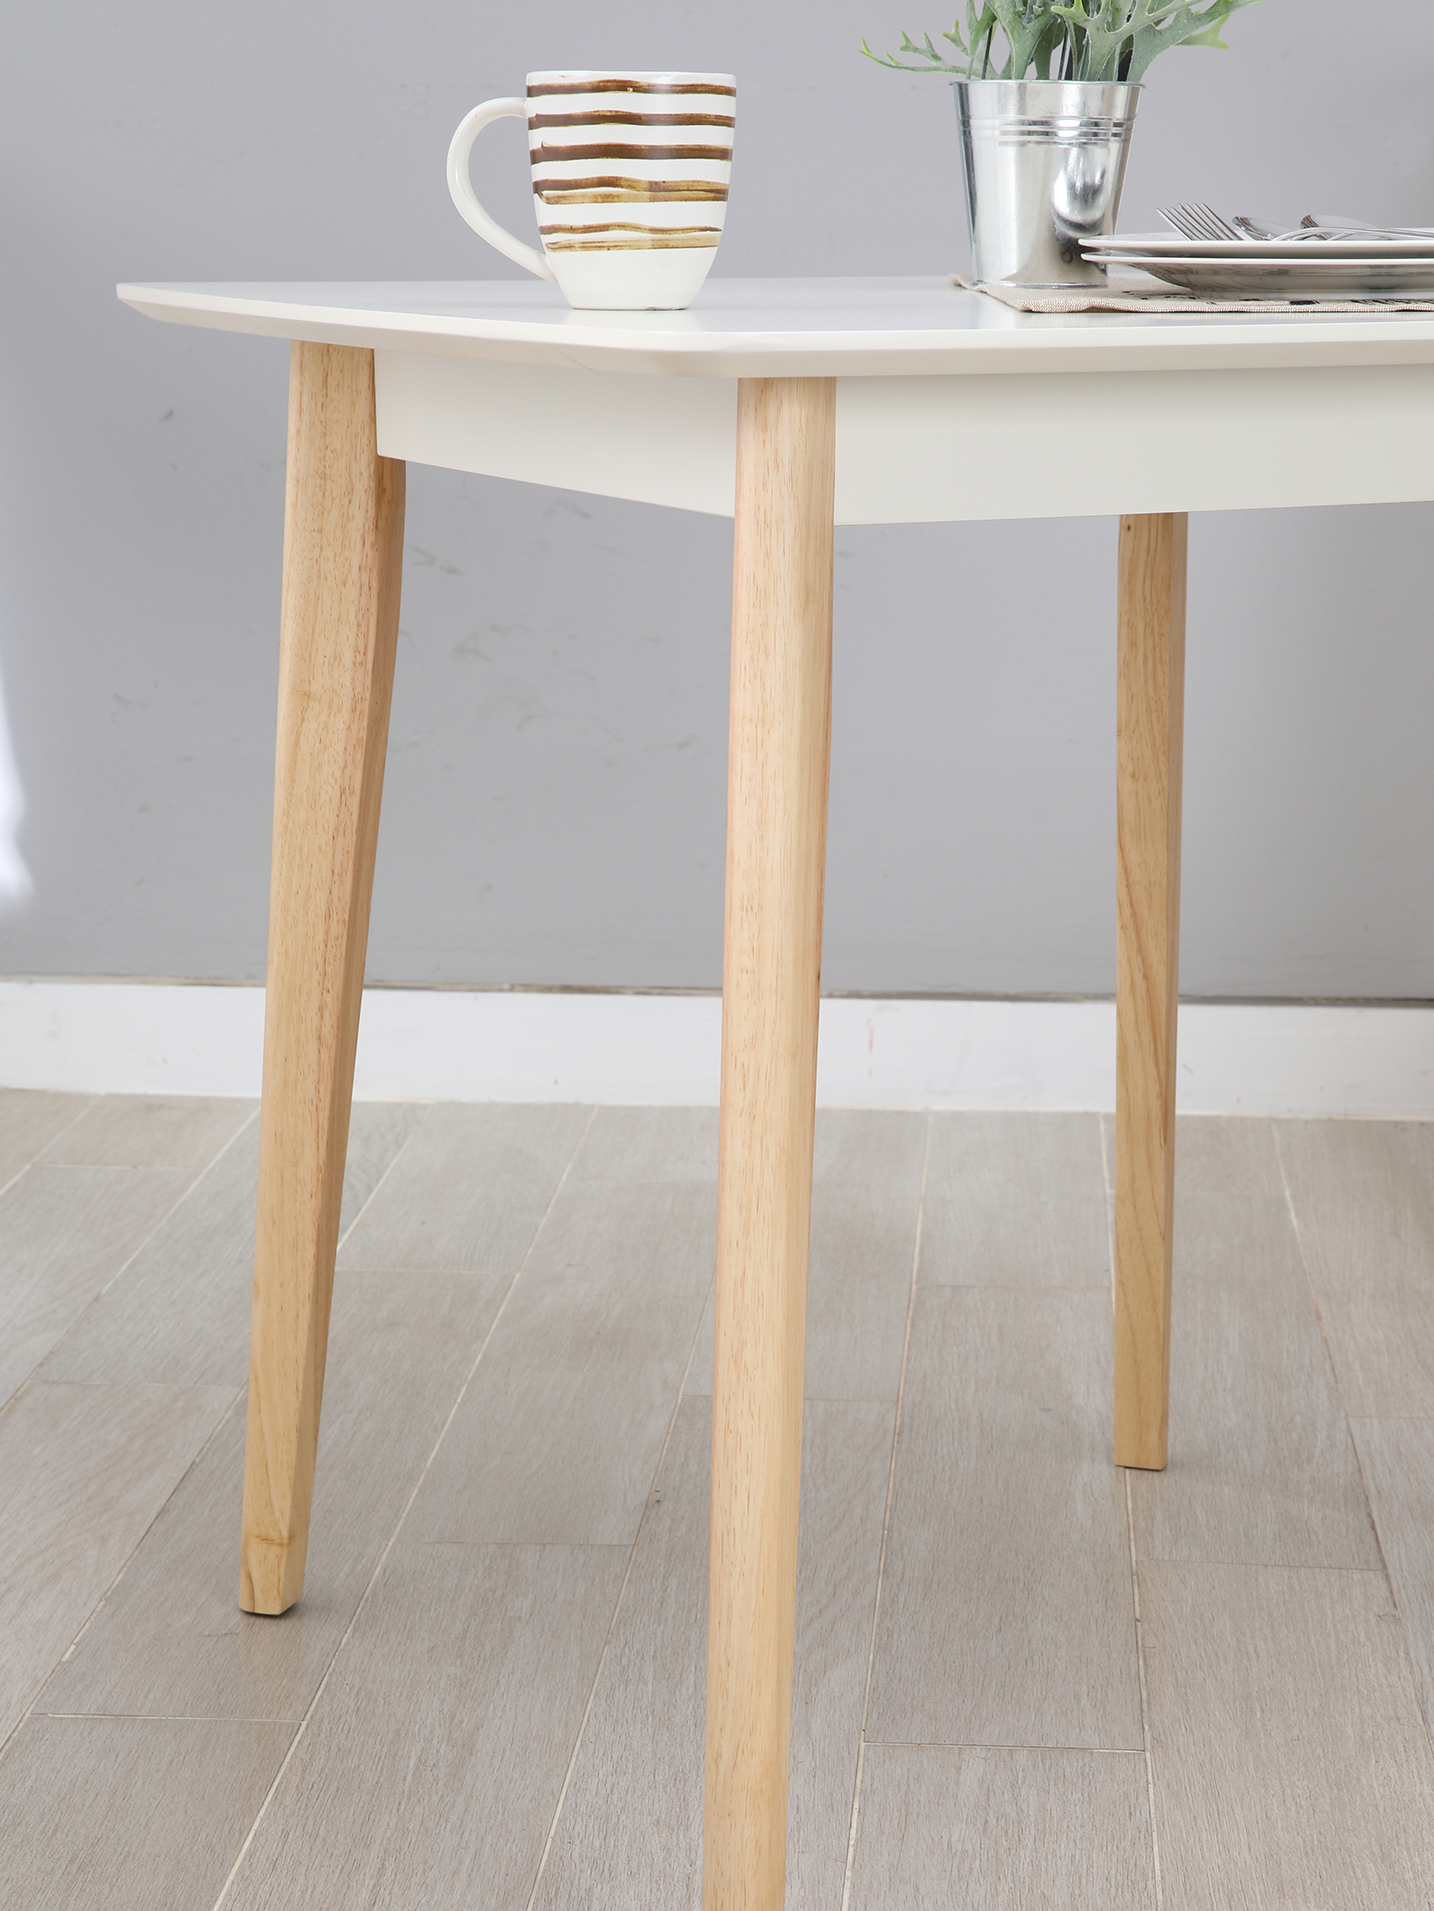 INDEX LIVING MALL ชุดโต๊ะอาหารไม้ รุ่นมาวิน/L (โต๊ะ1 + เก้าอี้2) - ลายไม้ธรรมชาติ/ขาว